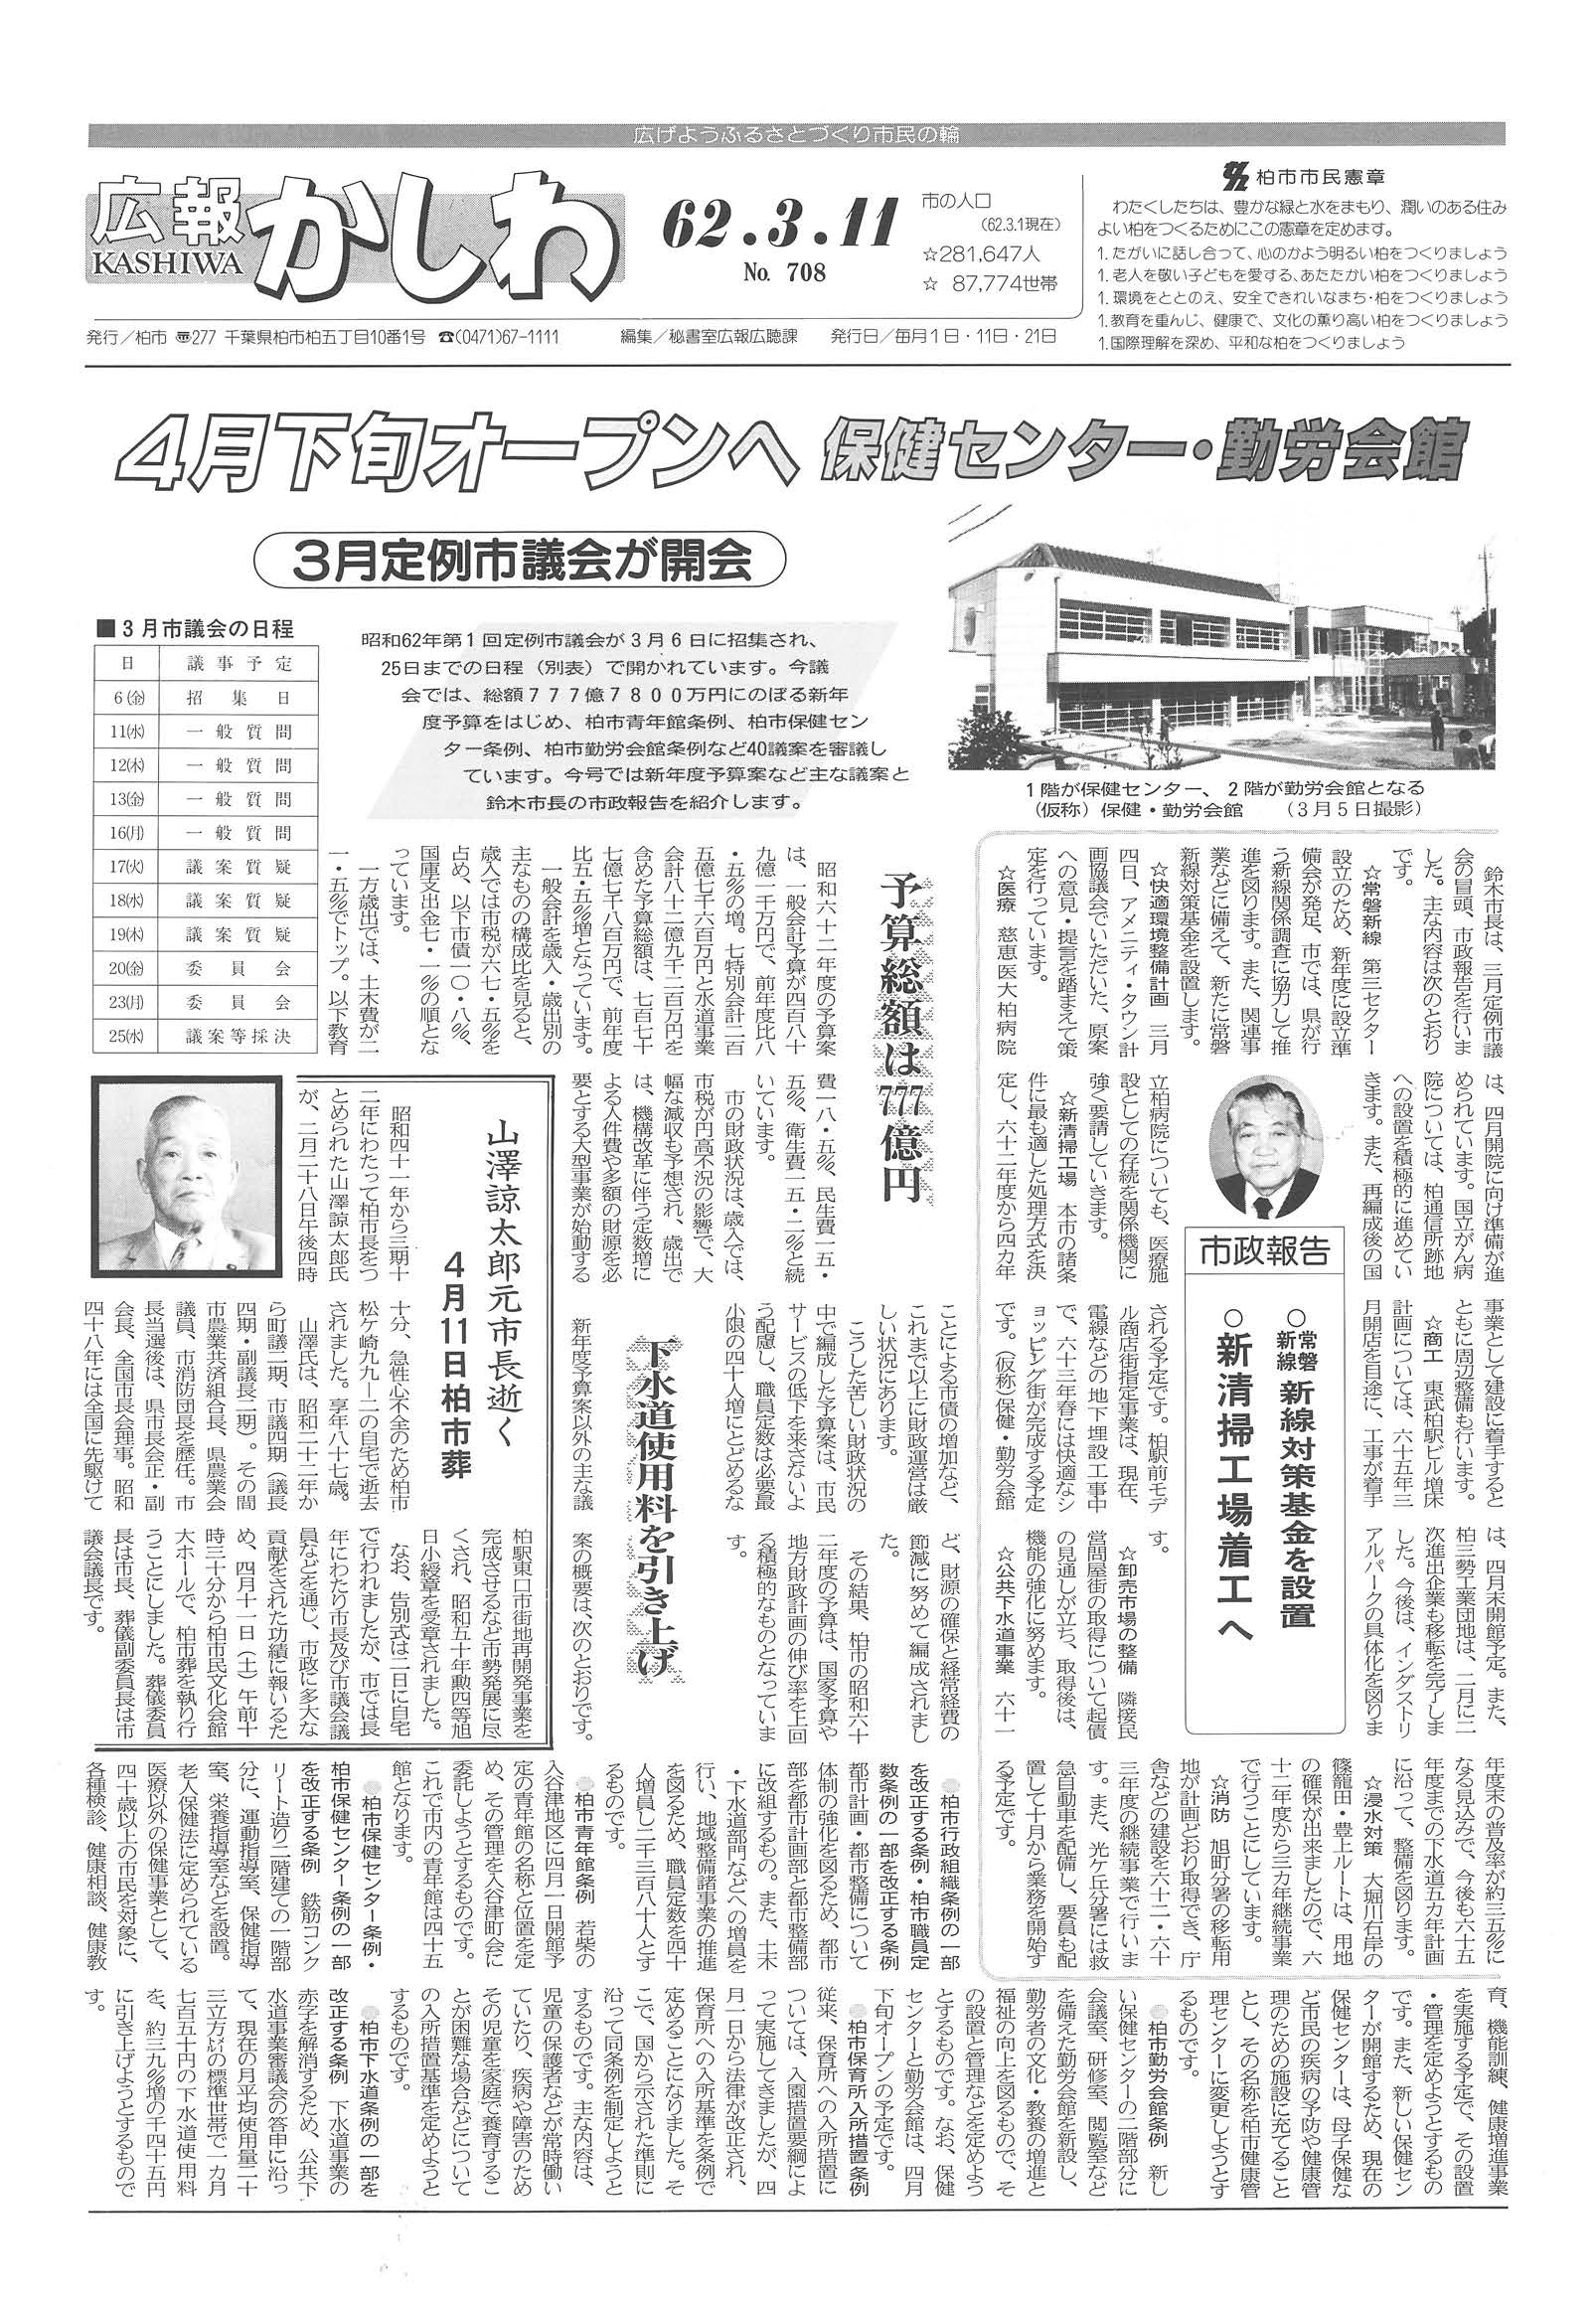 広報かしわ　昭和62年3月11日発行　708号